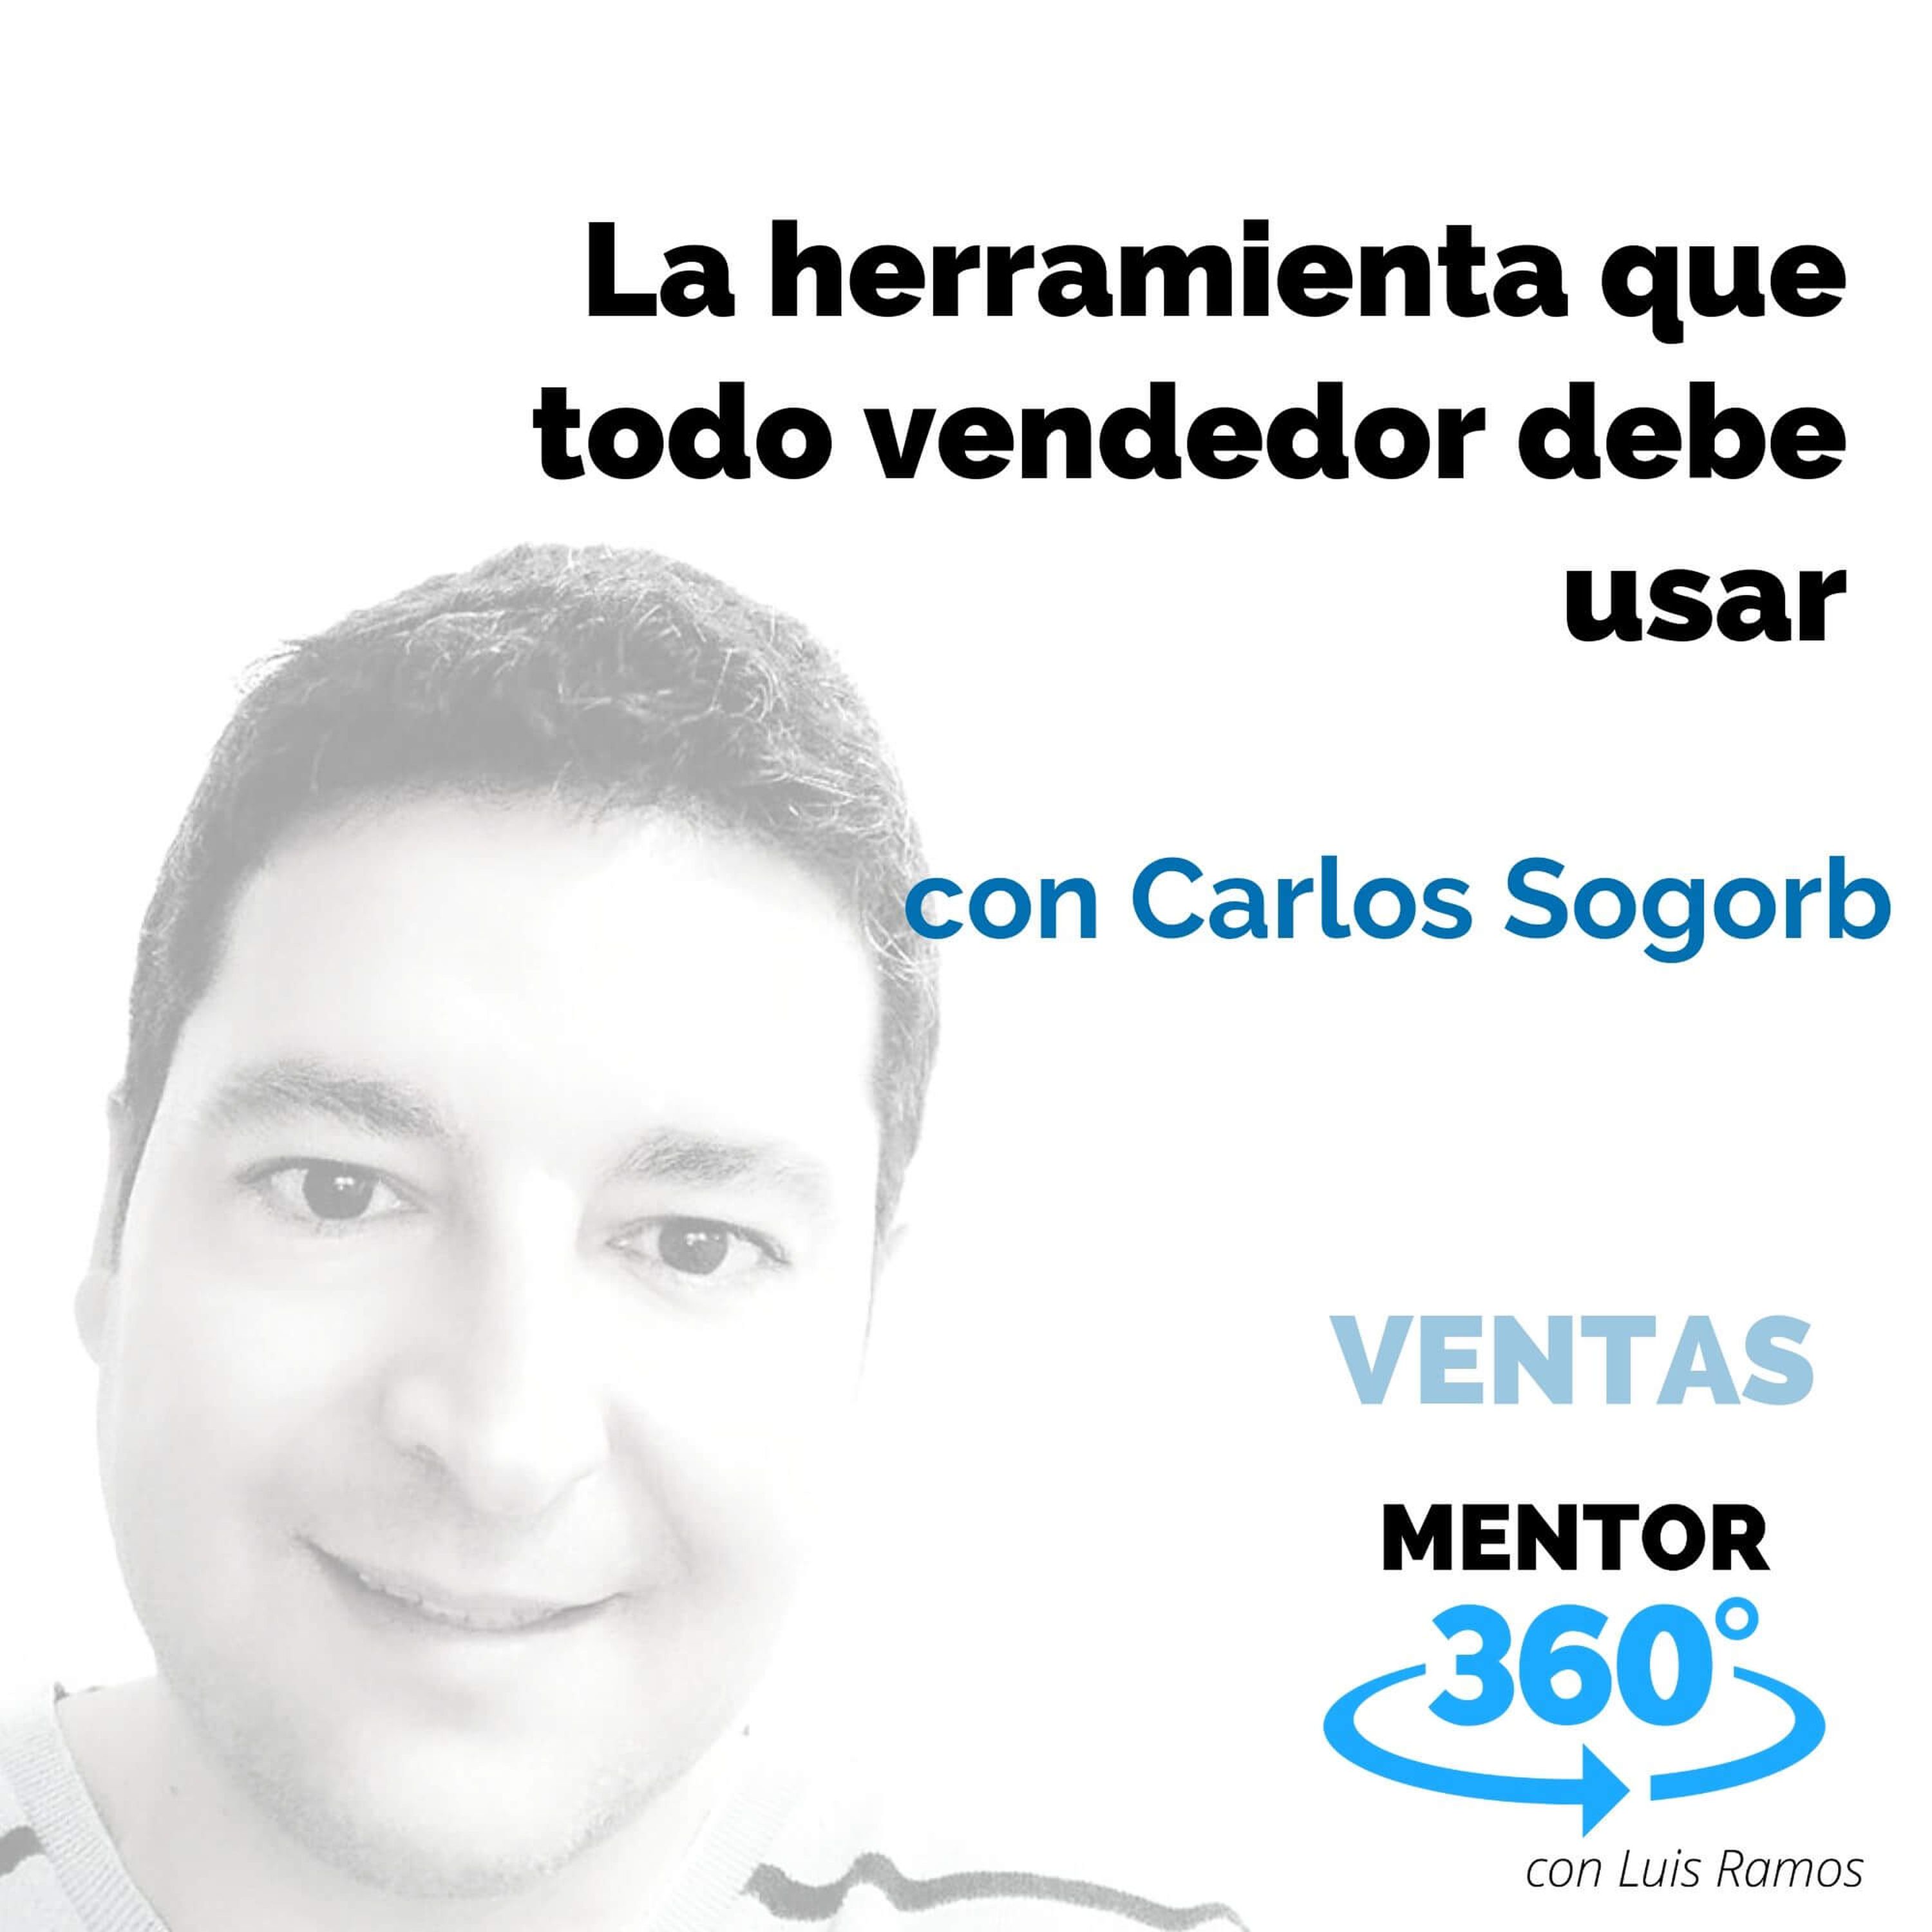 La herramienta que todo vendedor debe usar, con Carlos Sogorb - VENTAS - MENTOR360